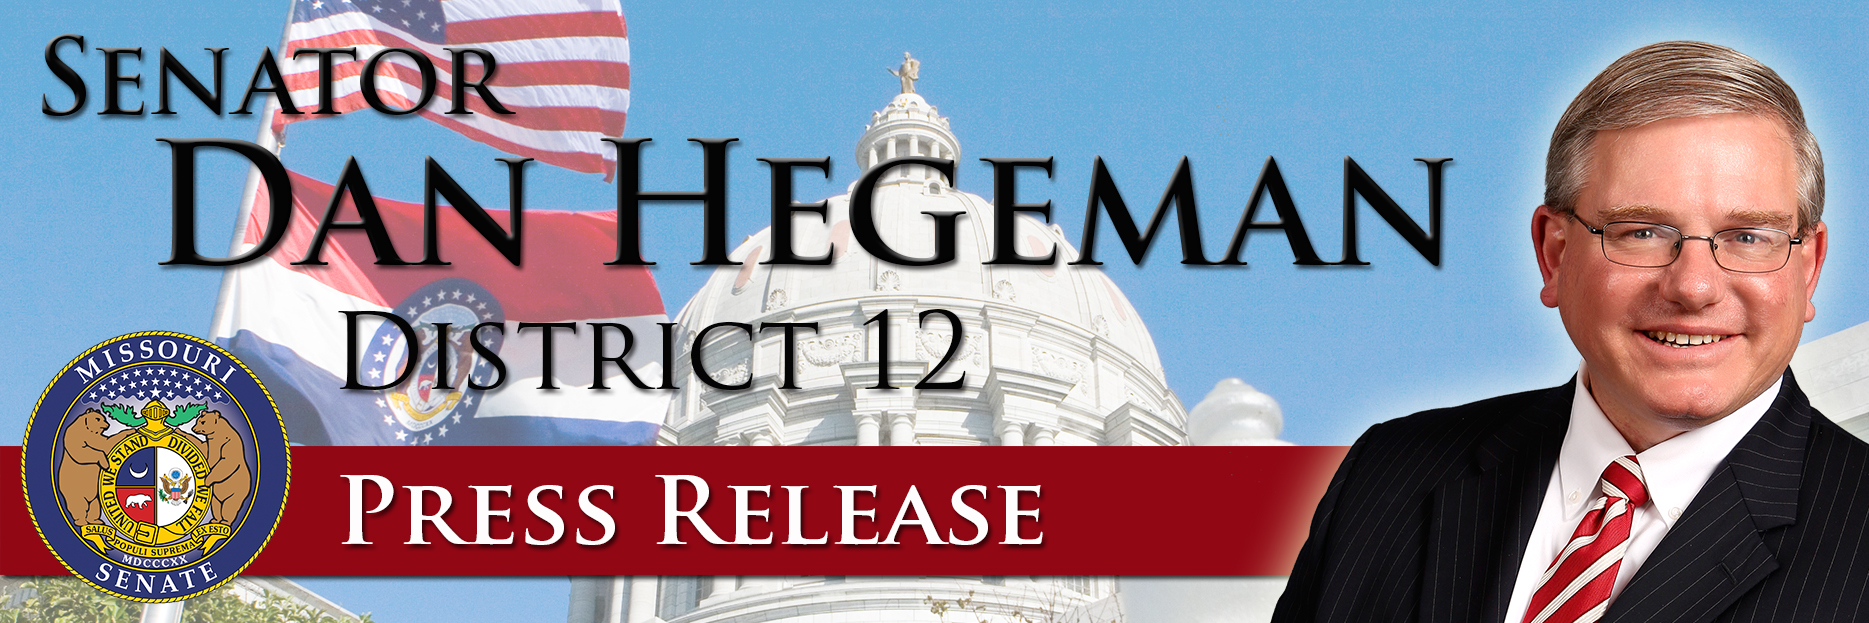 Hegeman - Press Release Banner - 010915